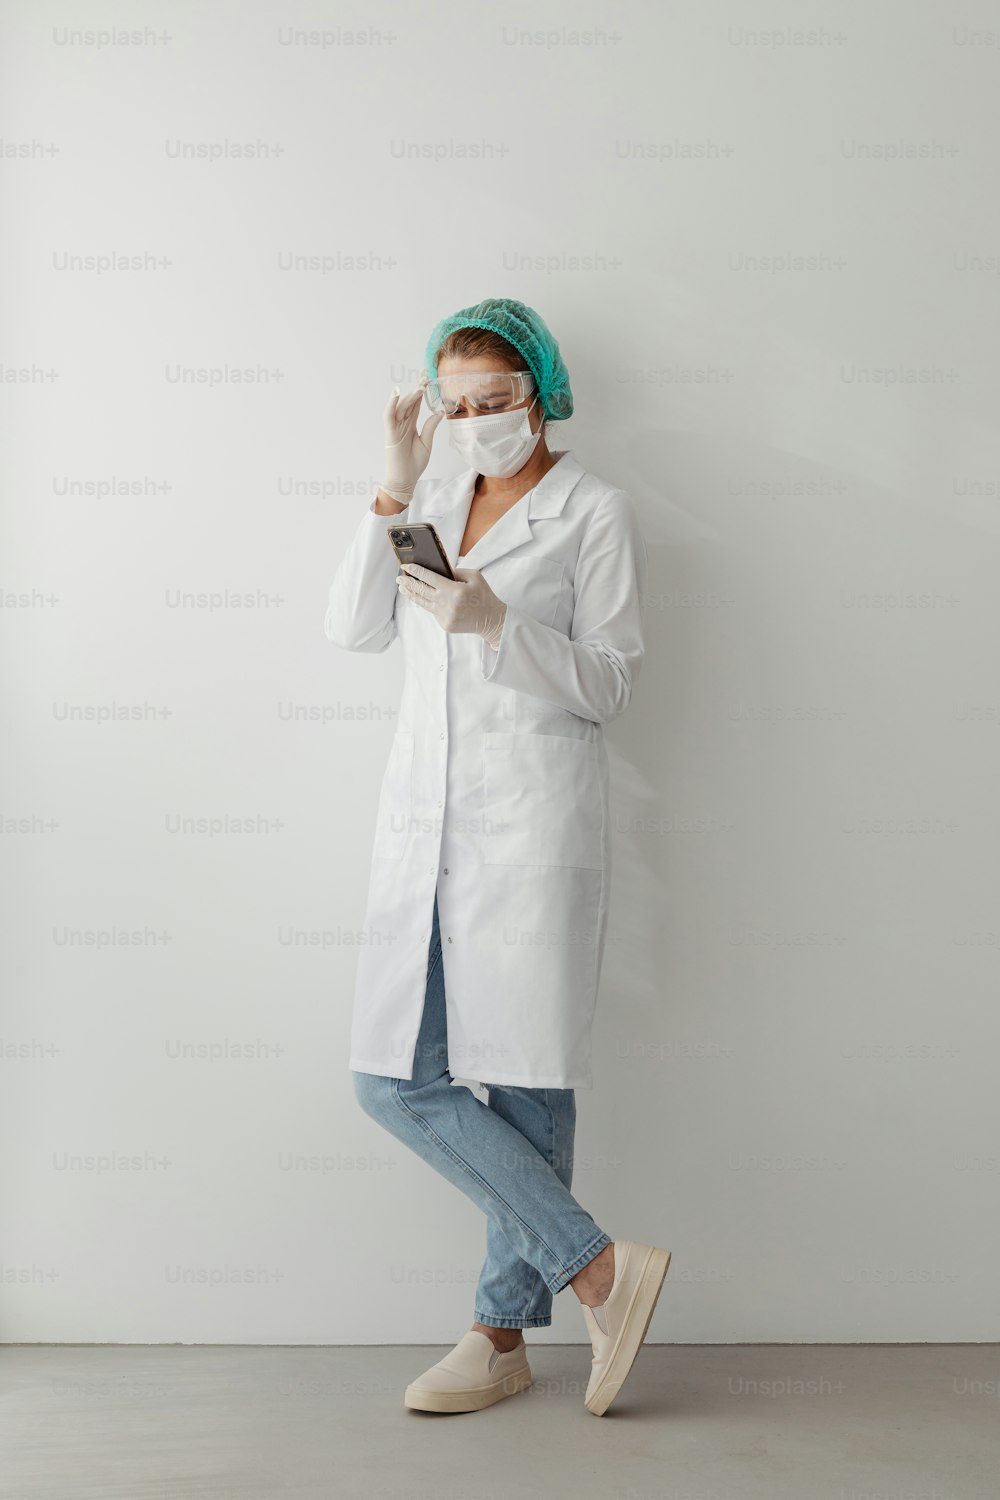 Eine Frau trägt einen weißen Laborkittel und eine weiße Maske